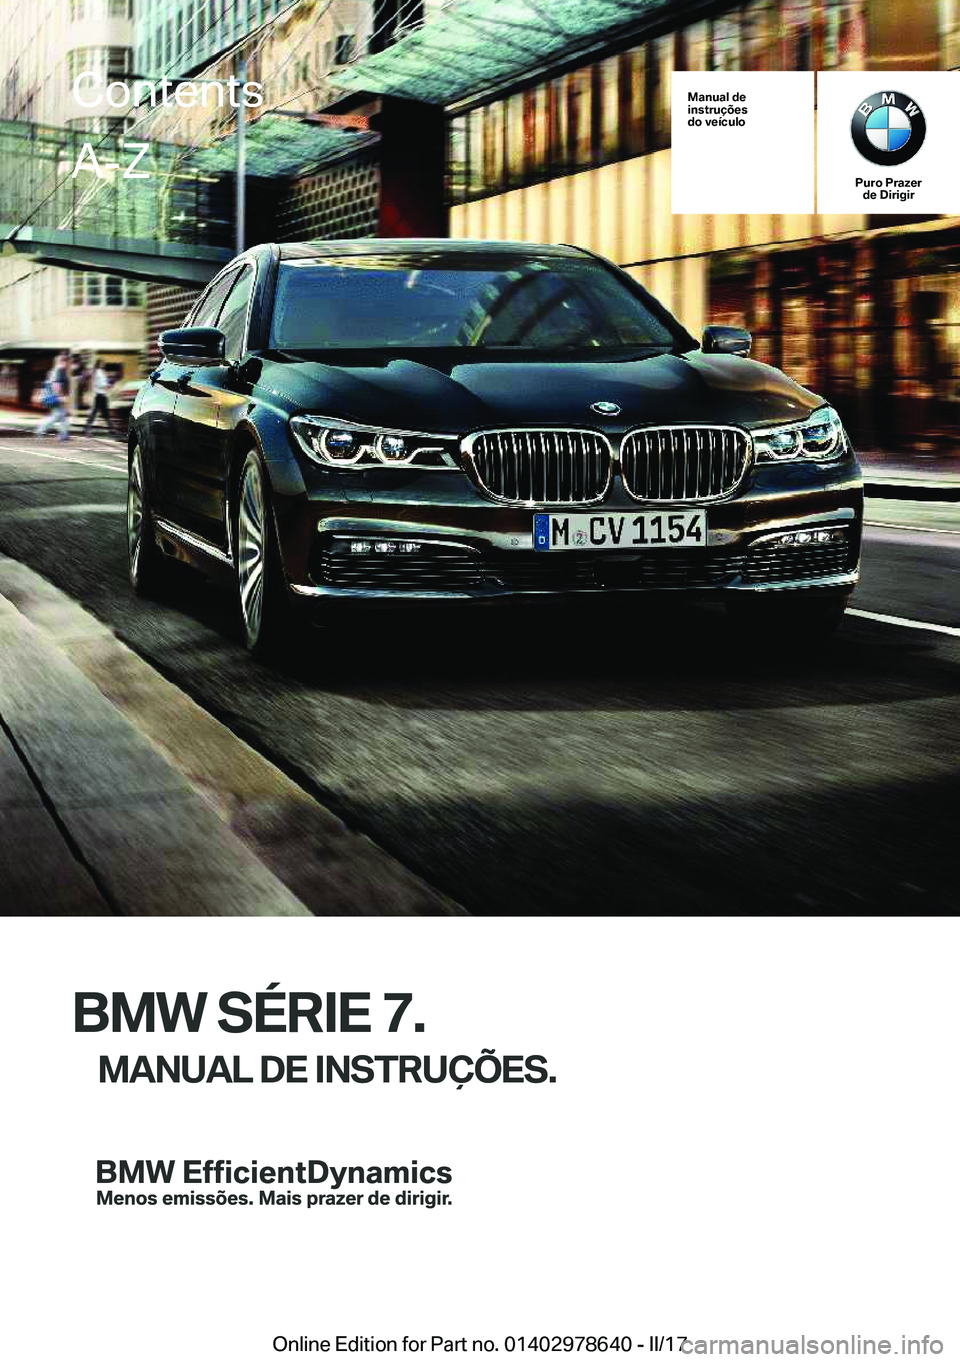 BMW 7 SERIES 2018  Manual do condutor (in Portuguese) �M�a�n�u�a�l��d�e
�i�n�s�t�r�u�